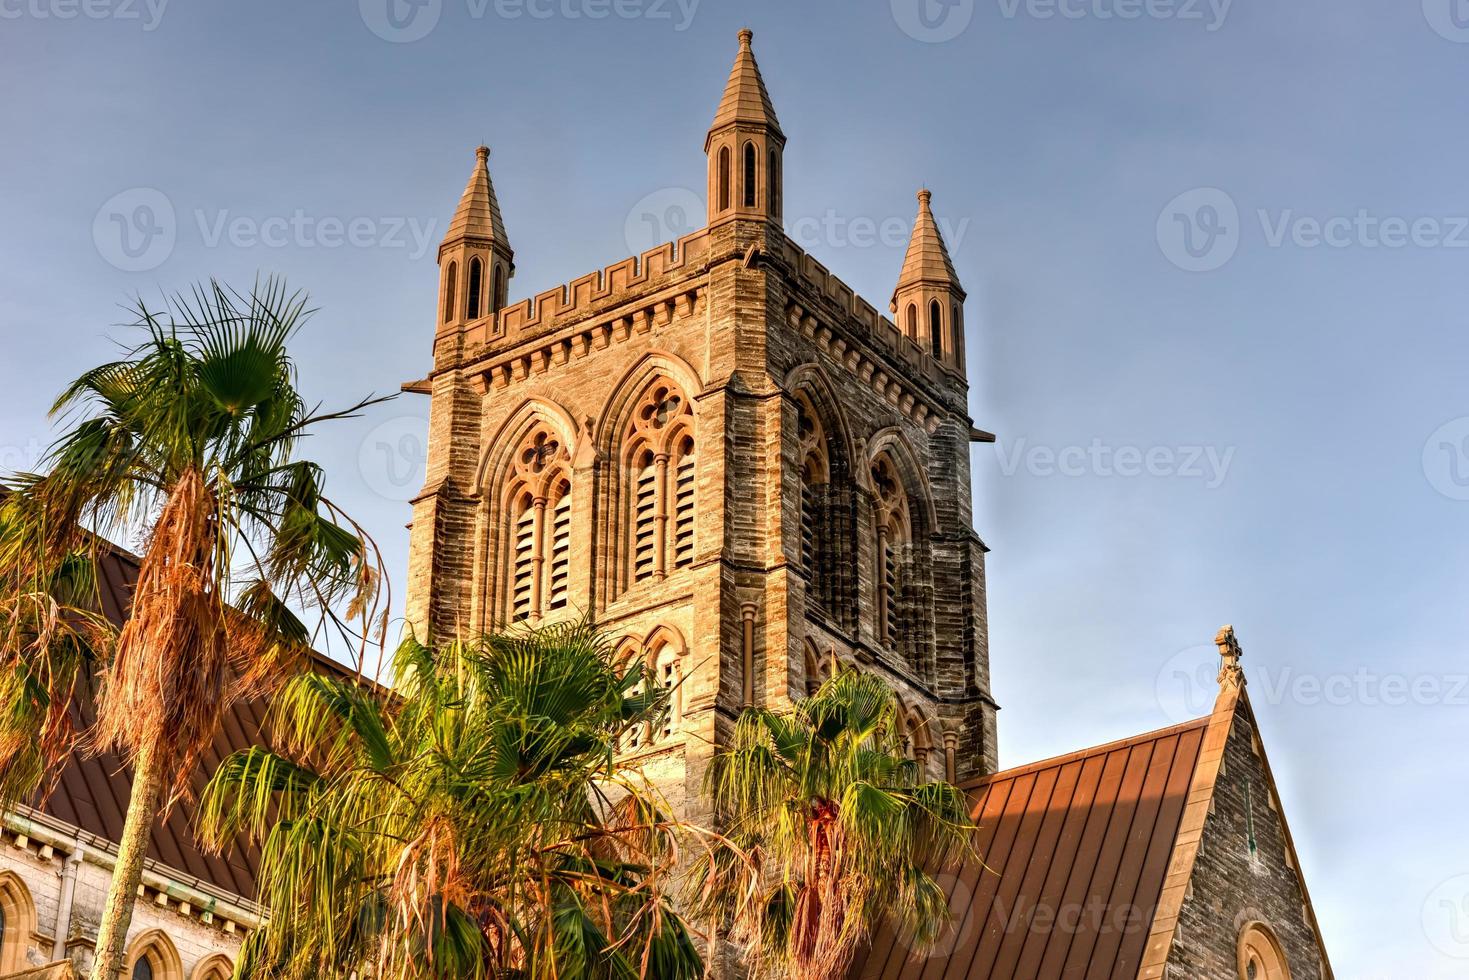 de katedral av de mest helig trinity är ett anglican katedral belägen på kyrka gata i Hamilton, bermuda. foto